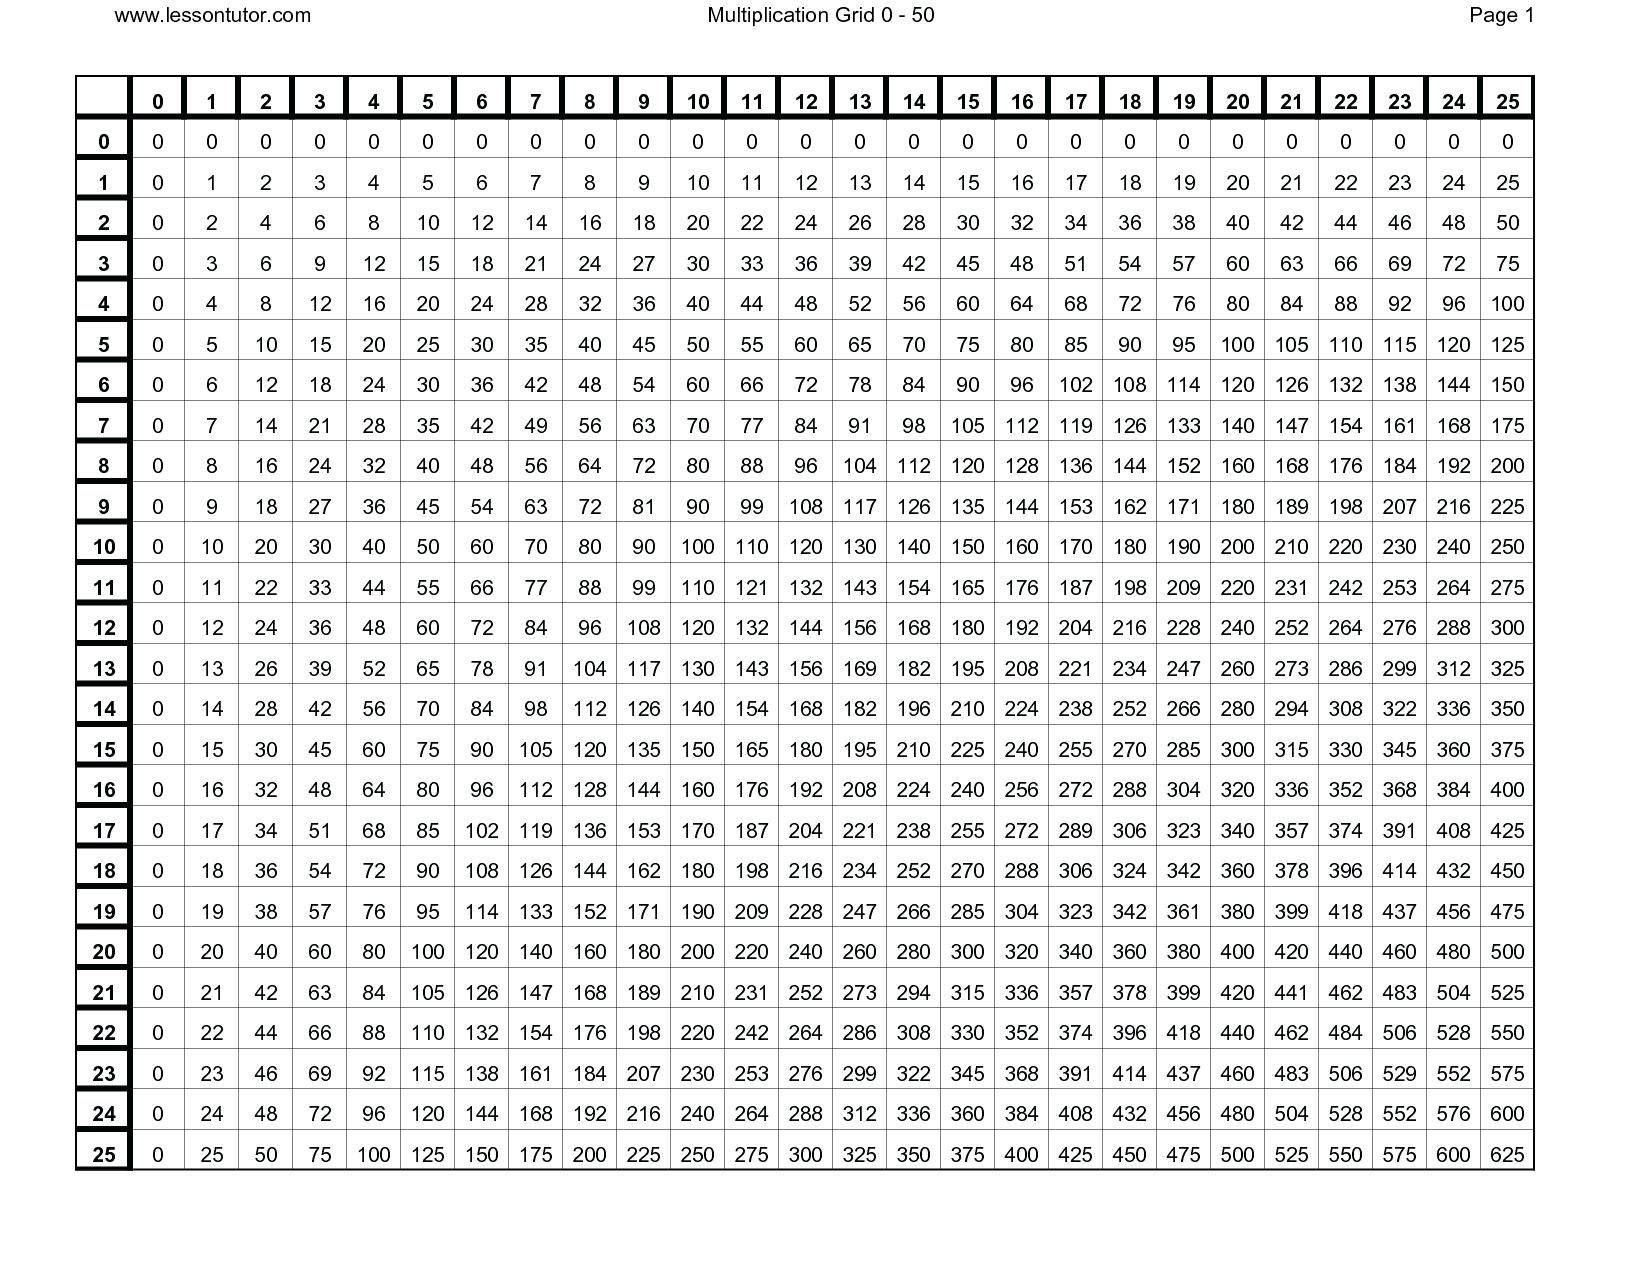 Times Tables Chart Printable Printable Times Table Chart